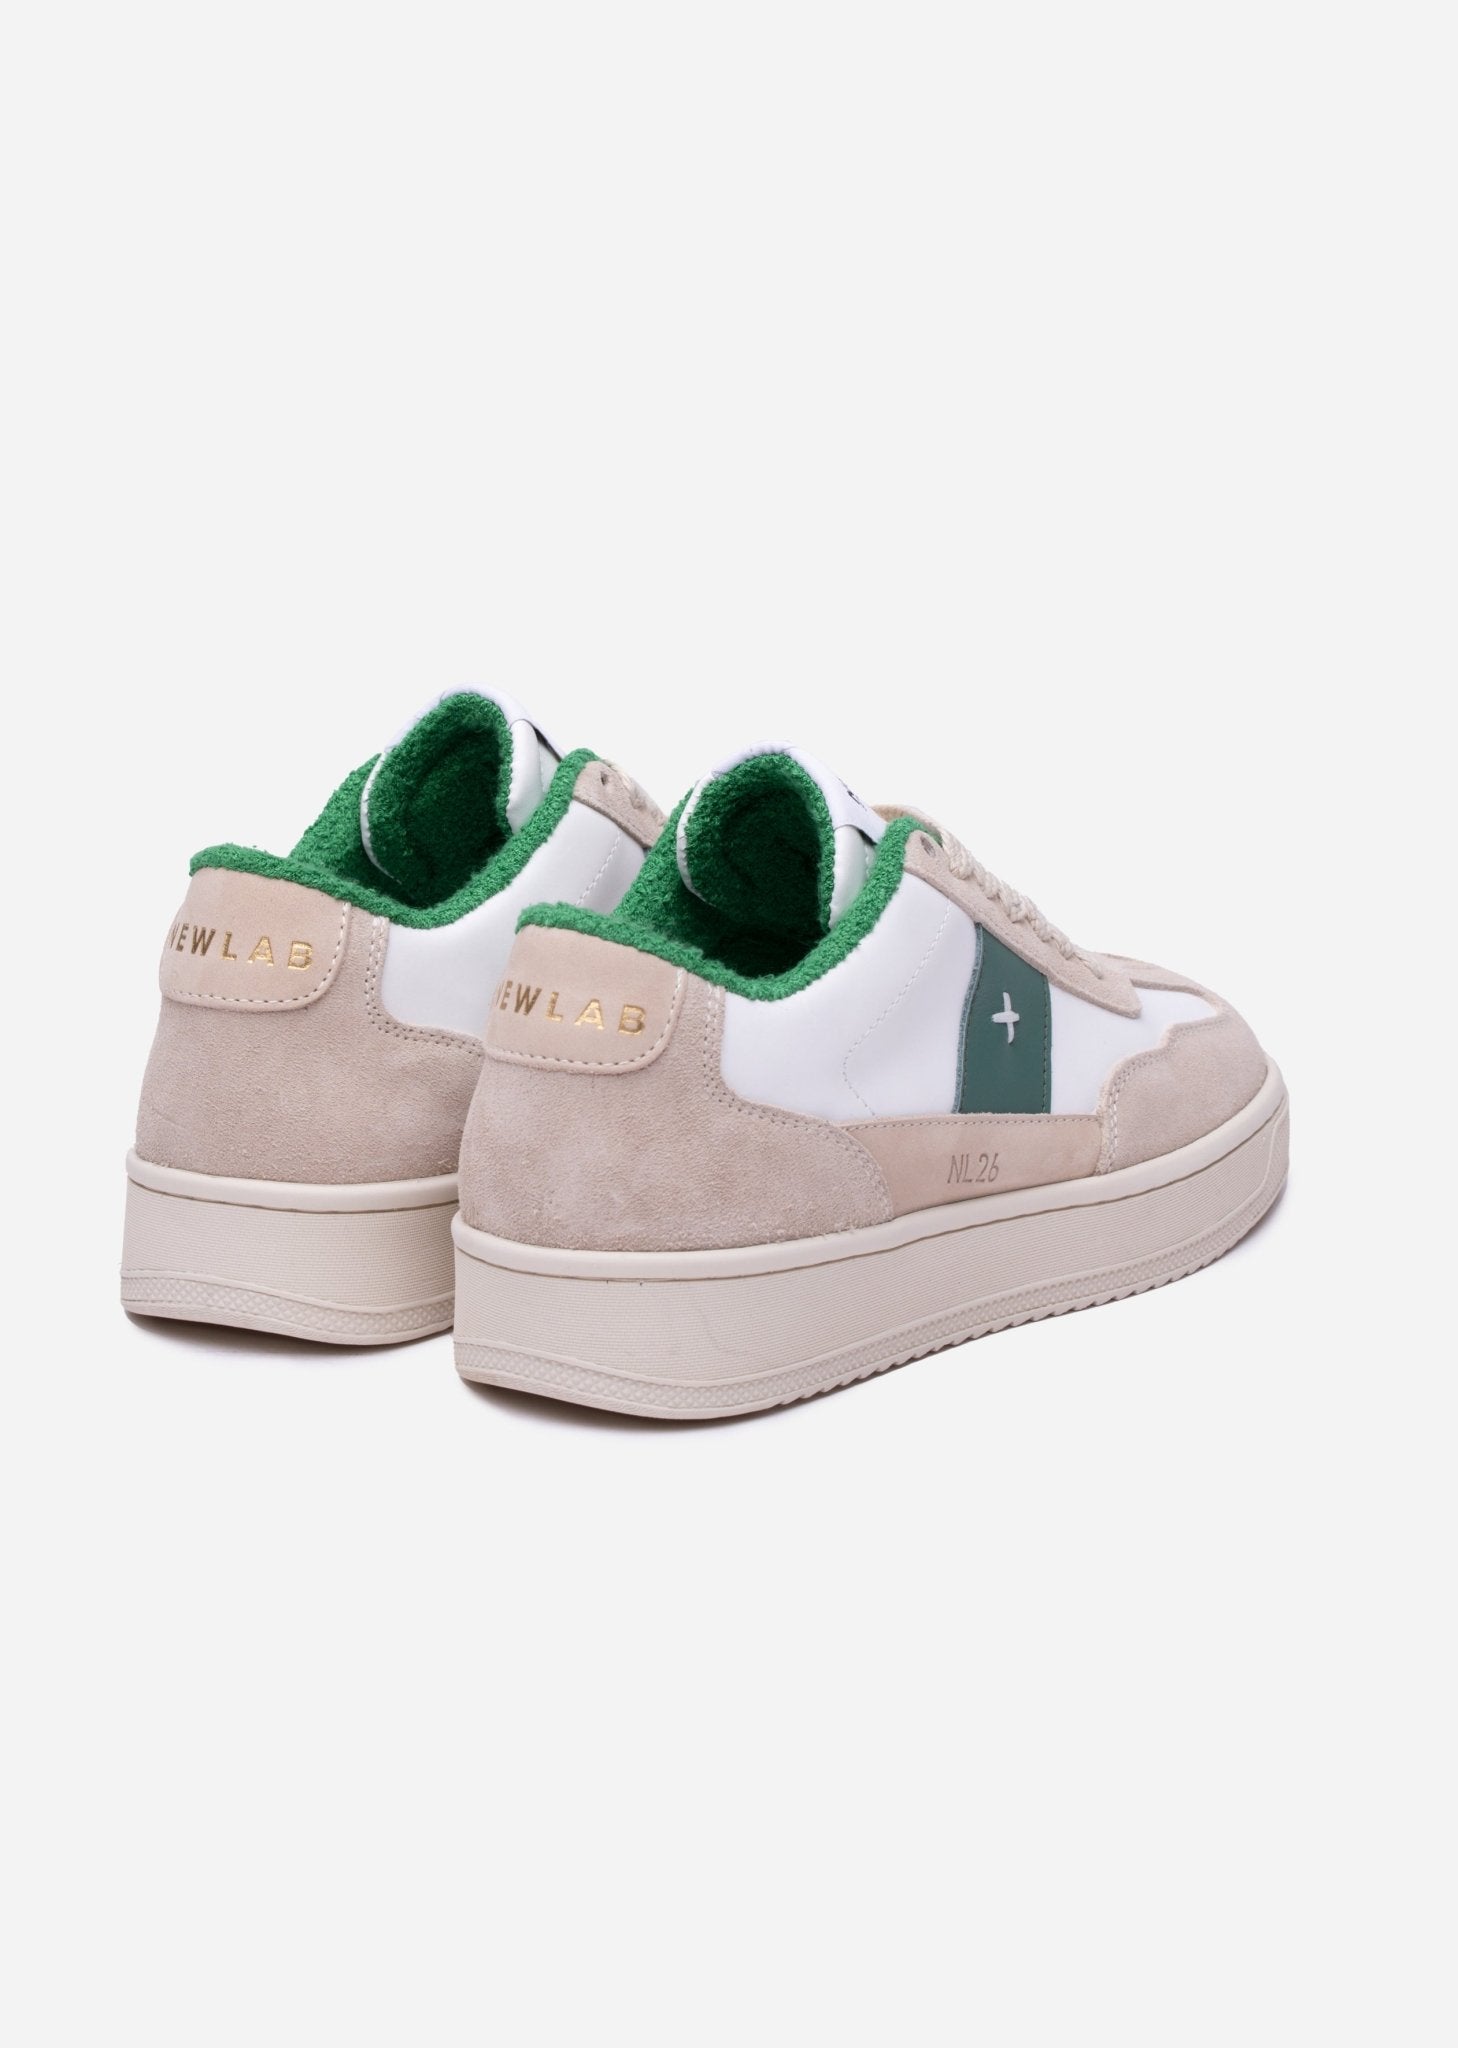 NL26 White/Beige/Green - NEWLAB - Chaussures - NEWLAB